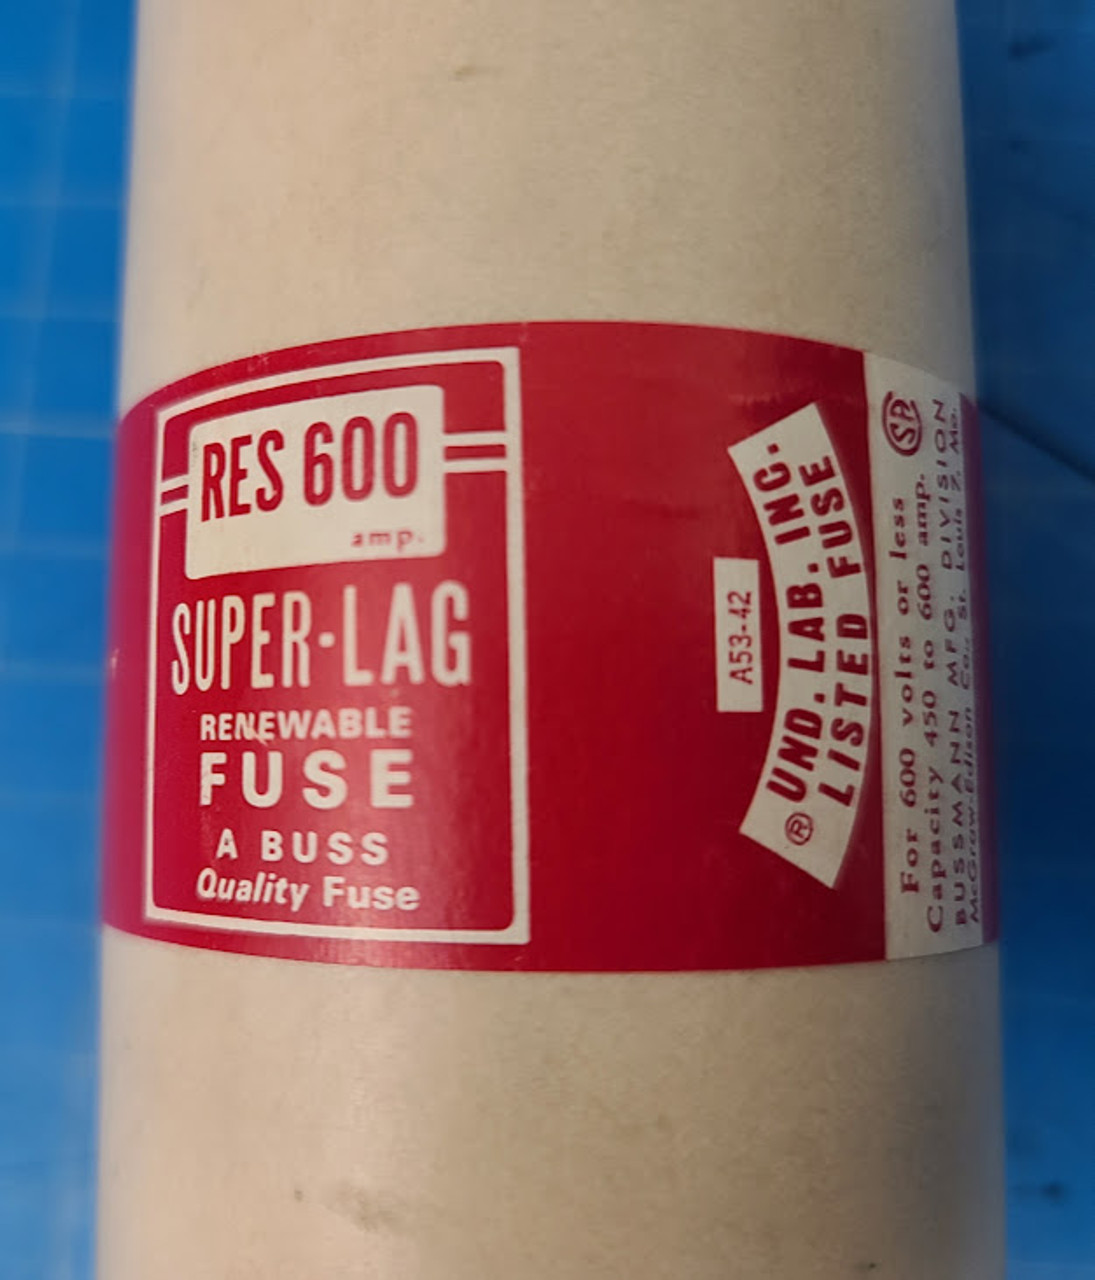 Bussmann 600 V Super-Lag Renewable Fuse RES600